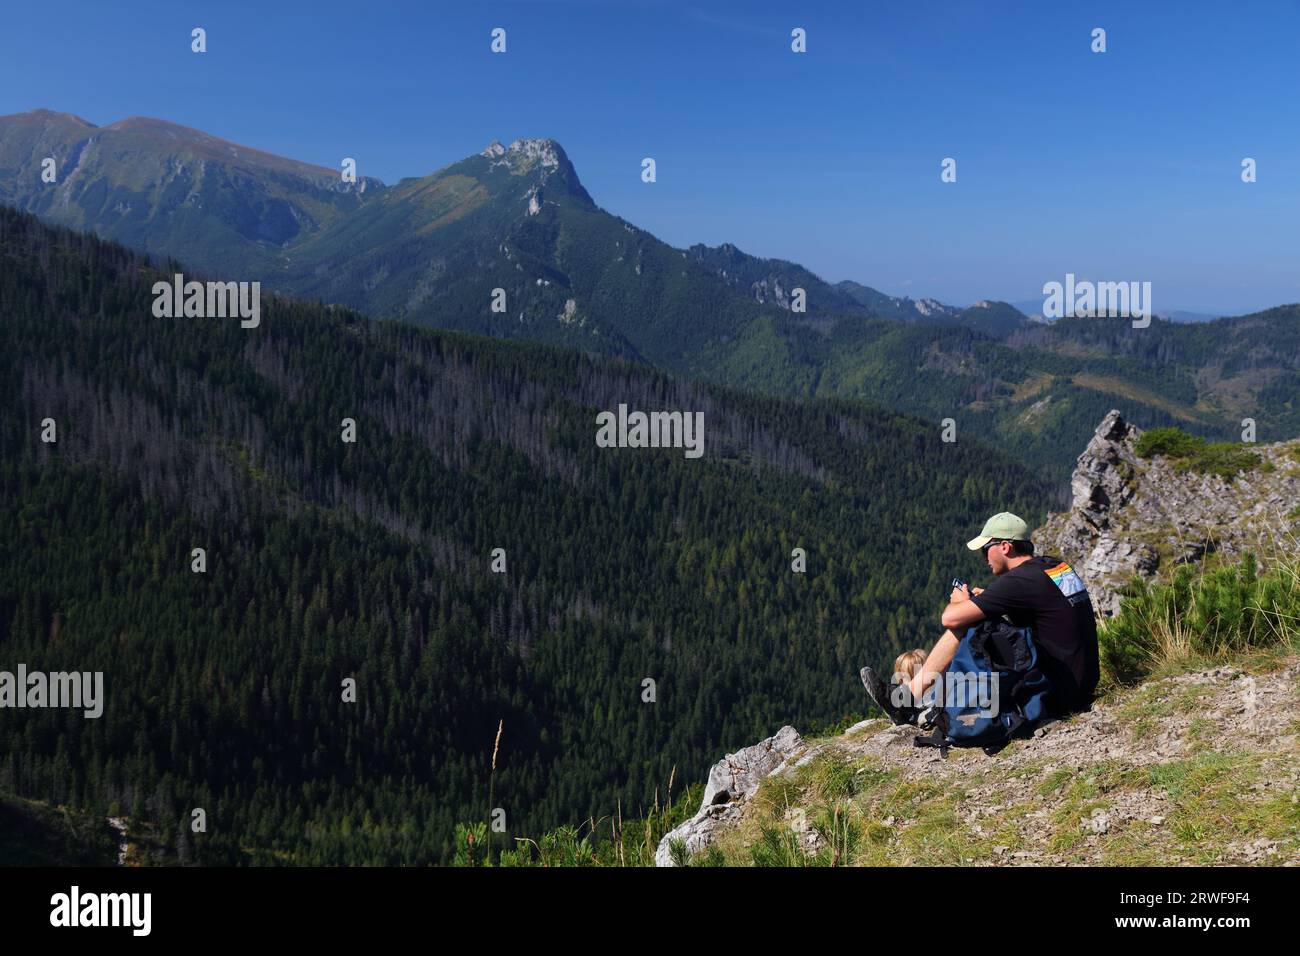 MONTAGNE TATRA, POLONIA - 9 SETTEMBRE 2023: Il turista gode di un punto panoramico della montagna Giewont nel Parco Tatrzanski Narodowy (Parco Nazionale Tatra) a Polan Foto Stock